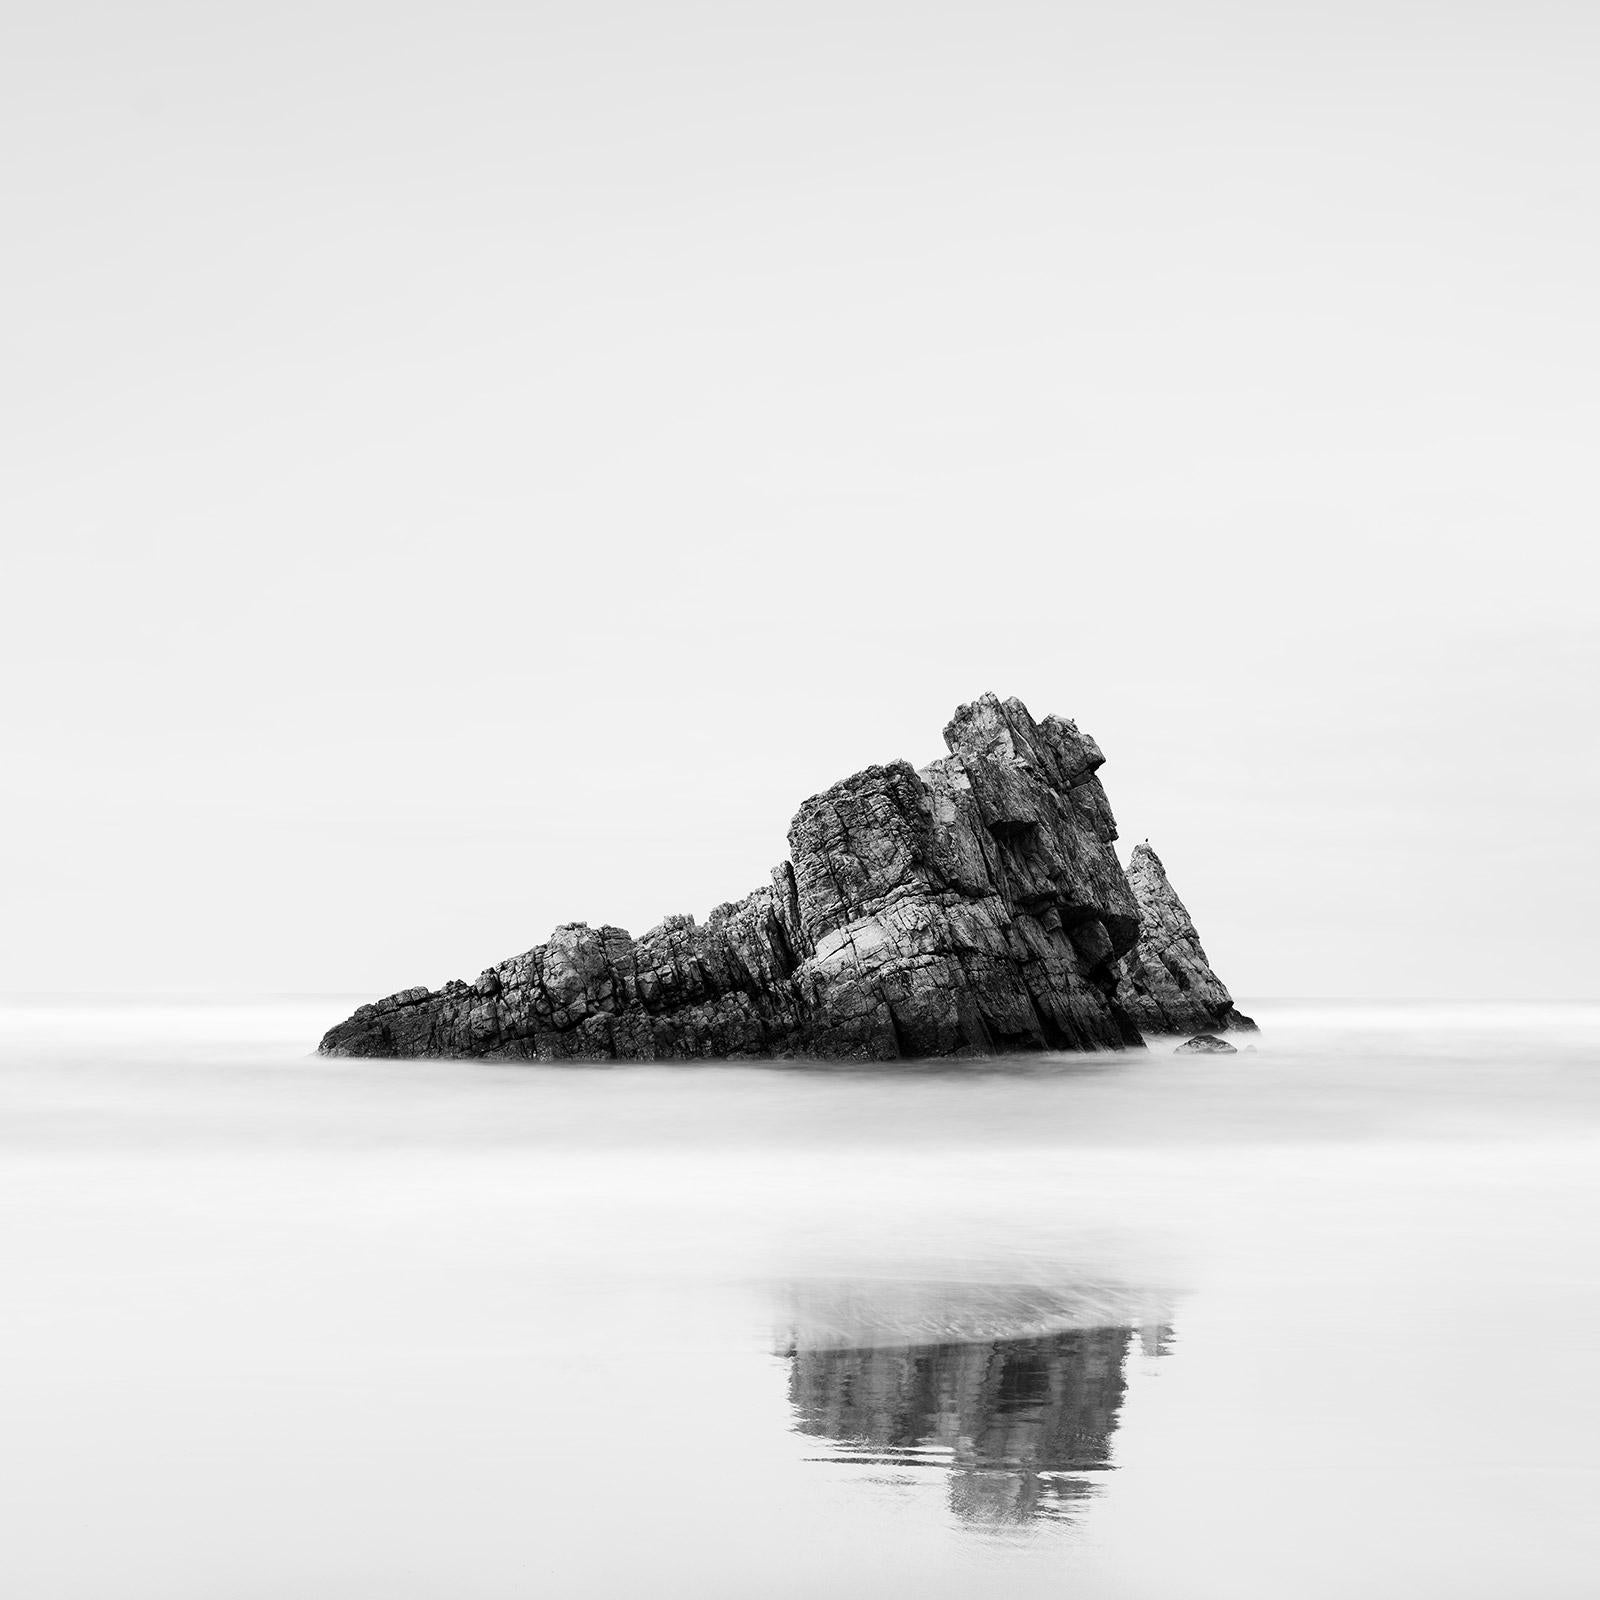 Black and White Photograph Gerald Berghammer - Rocher sur la plage, Golfe de Gascogne, Espagne, photographie de paysage en noir et blanc